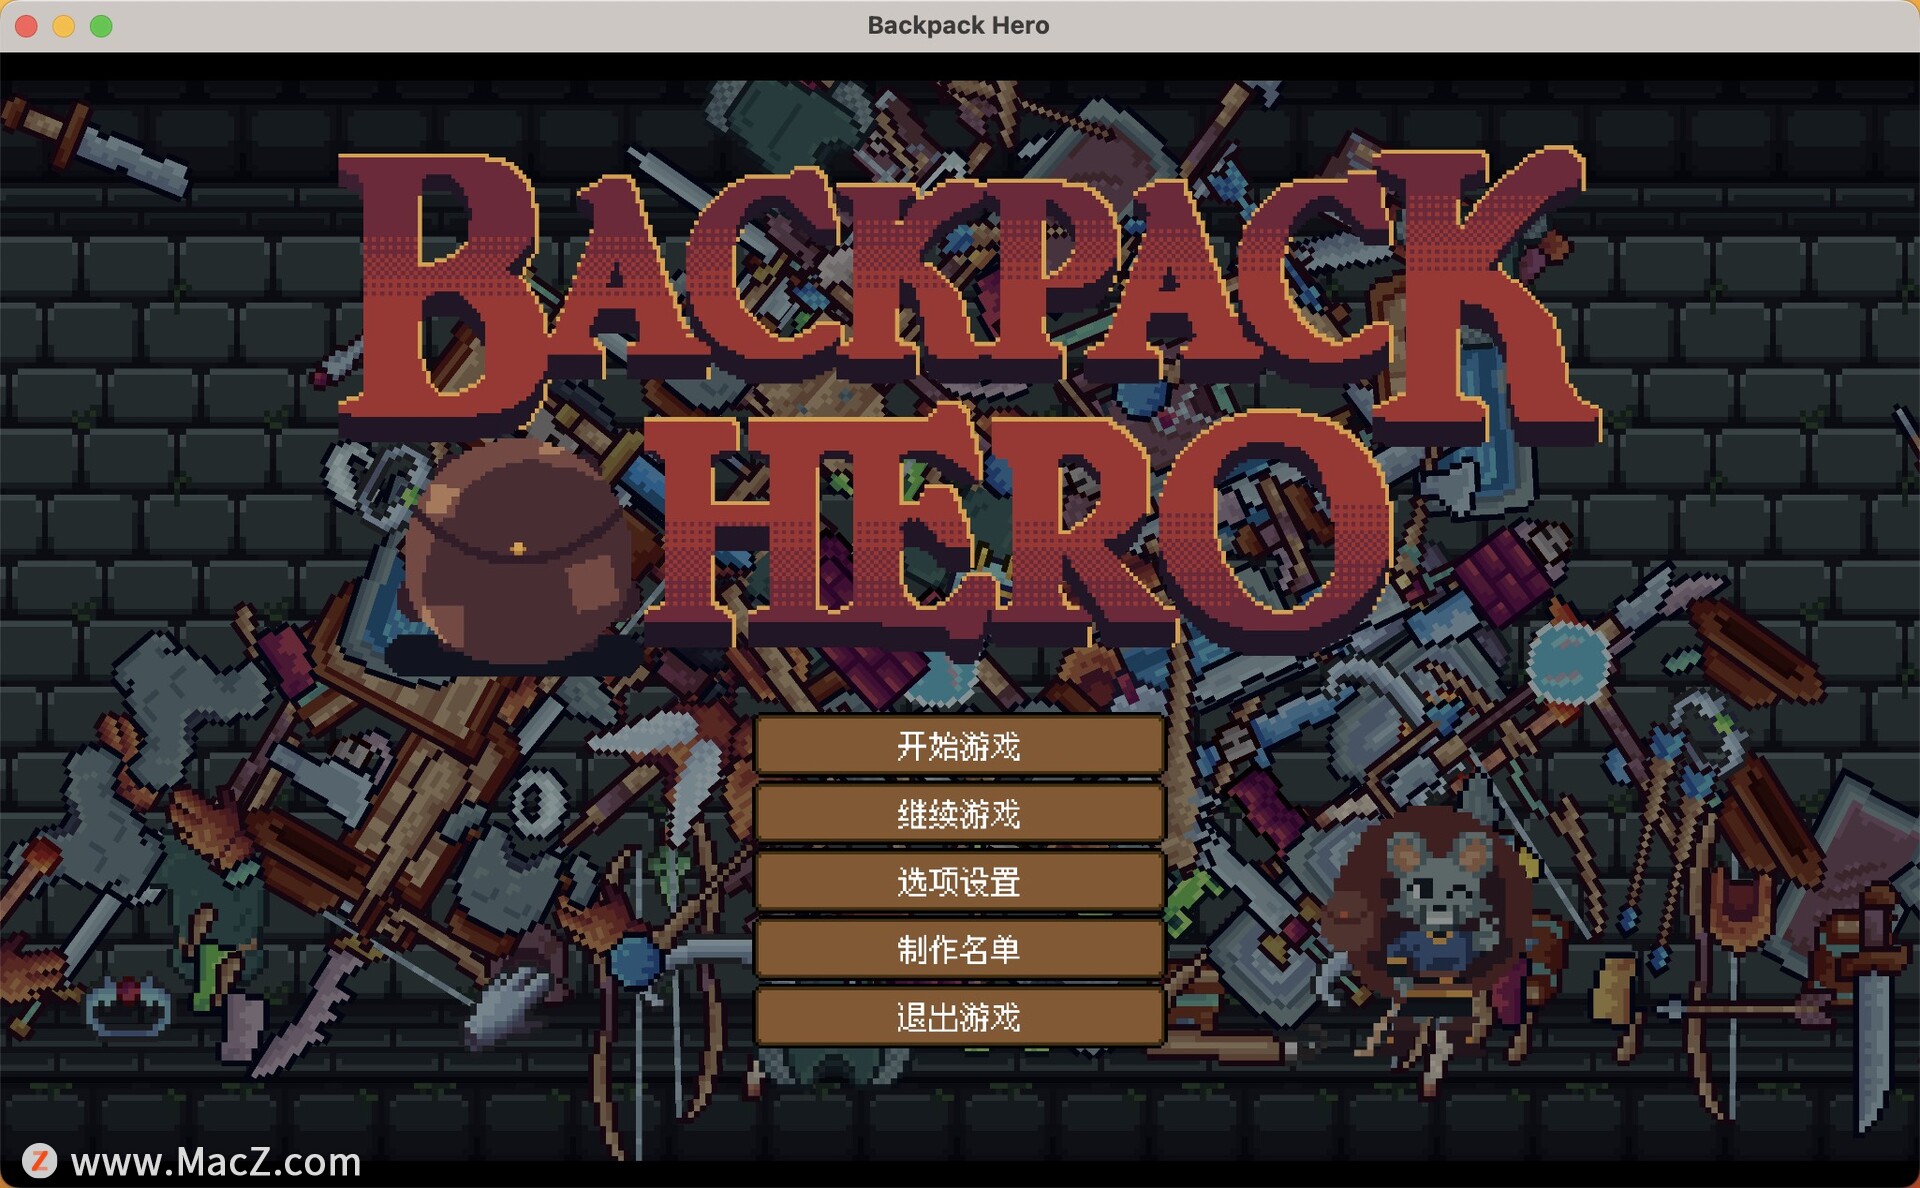 背包英雄 Backpack Hero for mac(冒险闯关游戏)